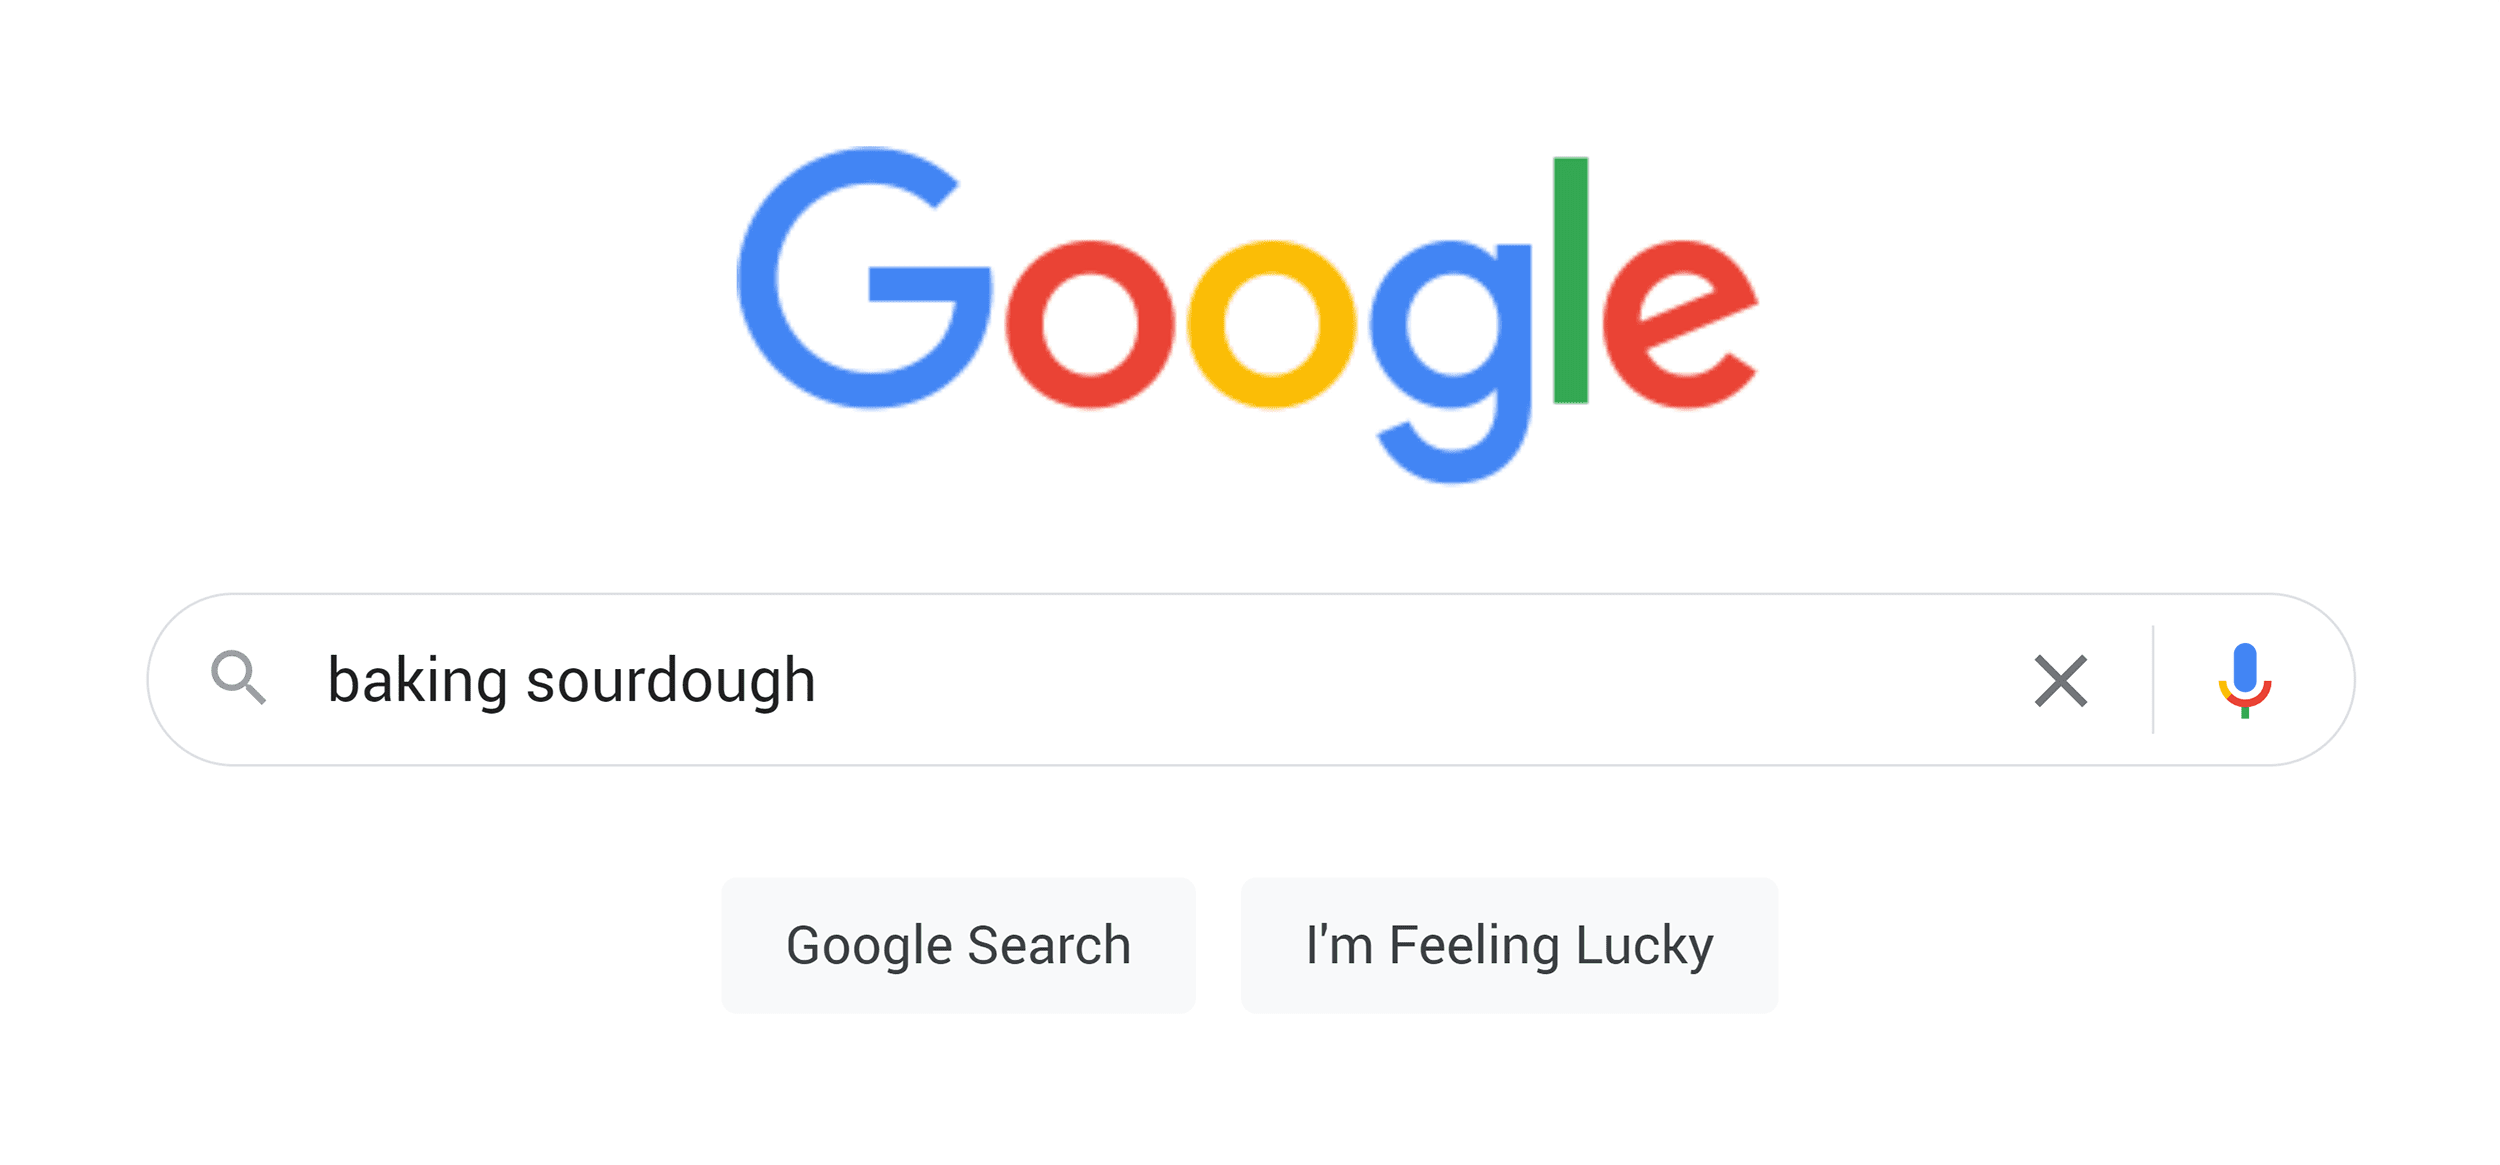 Google Search – Baking sourdough